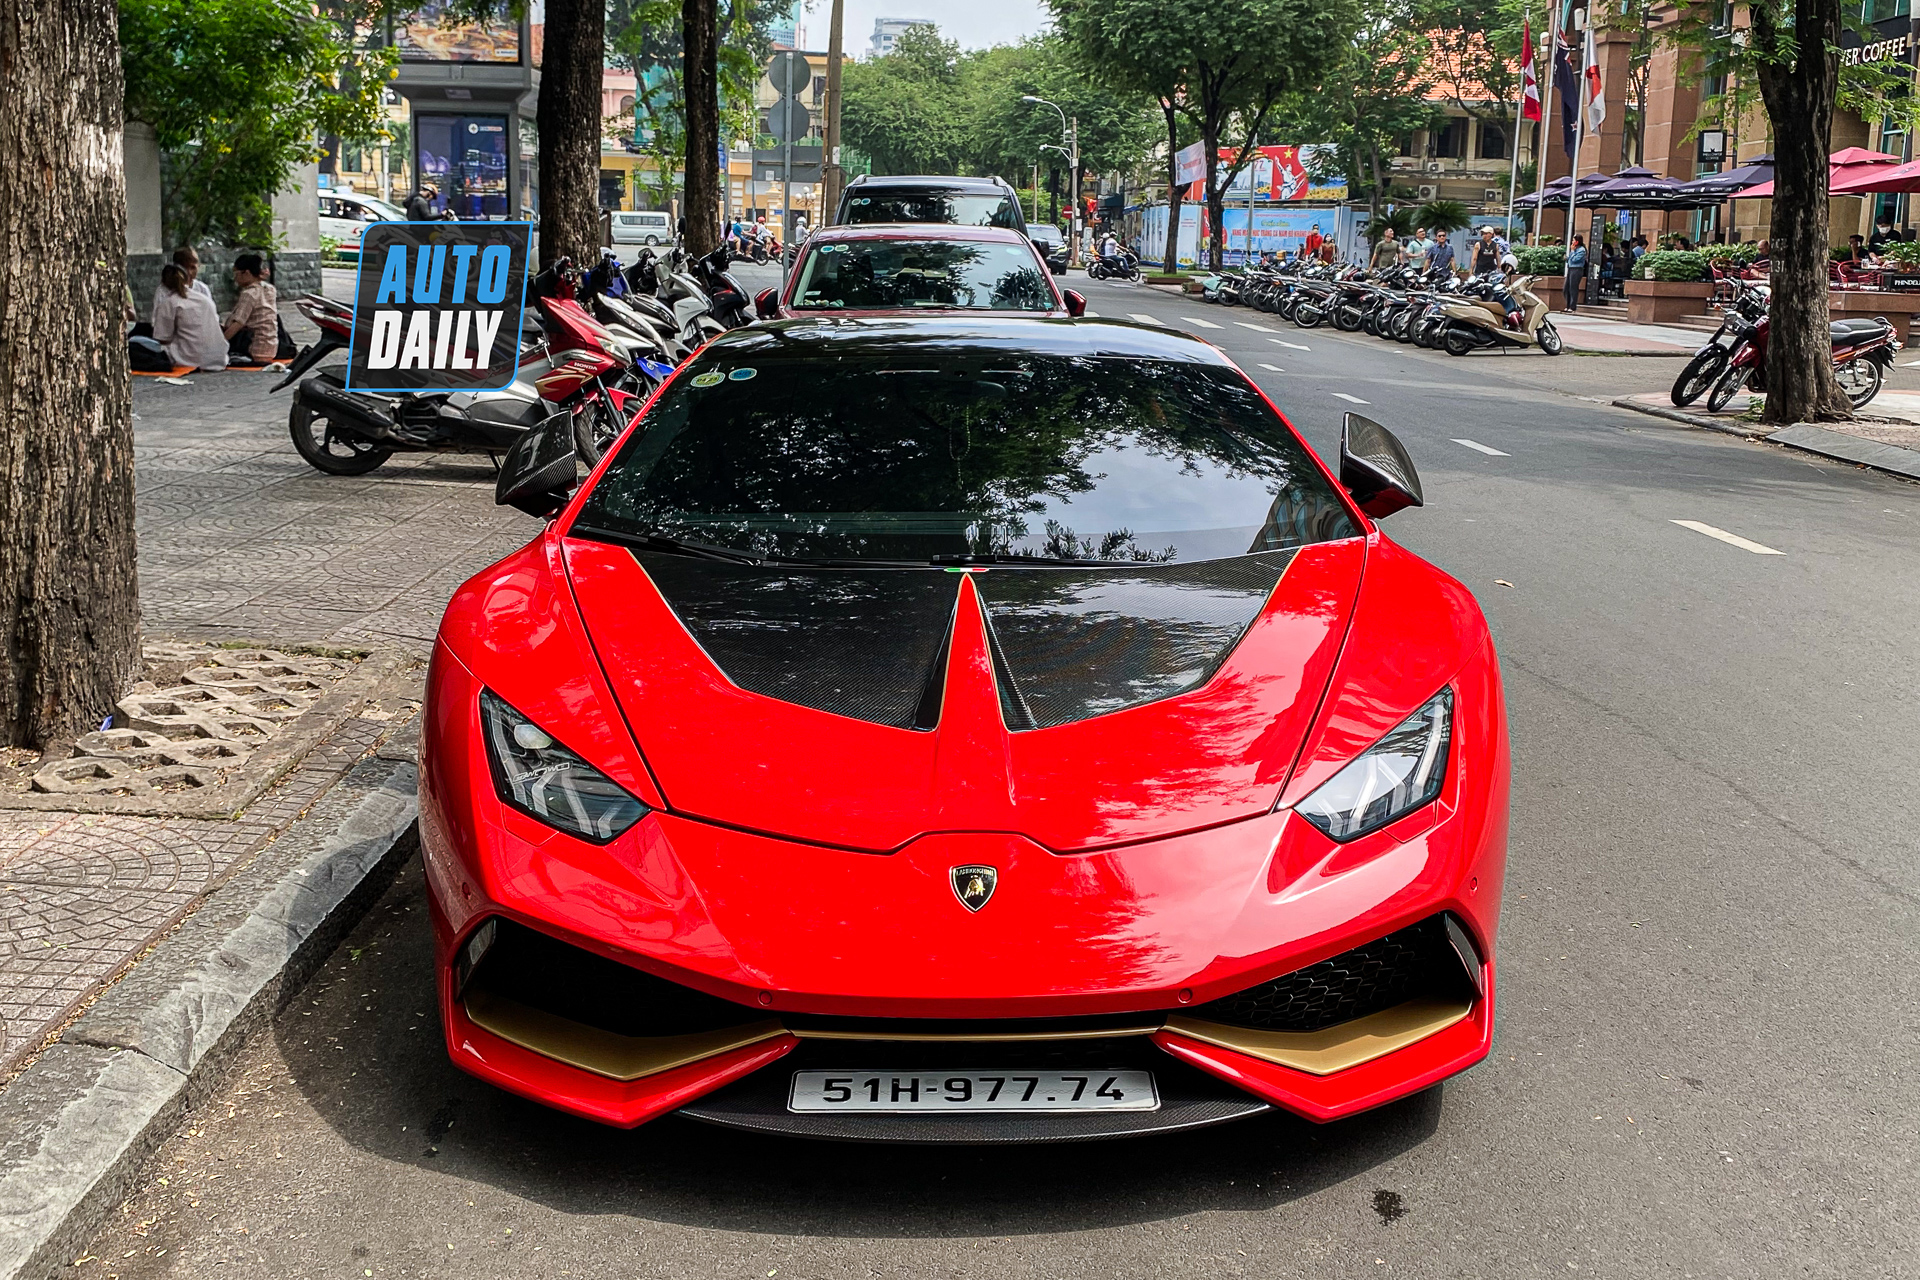 Bắt gặp Lamborghini Huracan độ khủng của đại gia Sài Gòn, bộ mâm hàng thửa giá hàng trăm triệu lamborghini-huracan-do-bo-mam-tram-trieu-autodaily-3.JPG